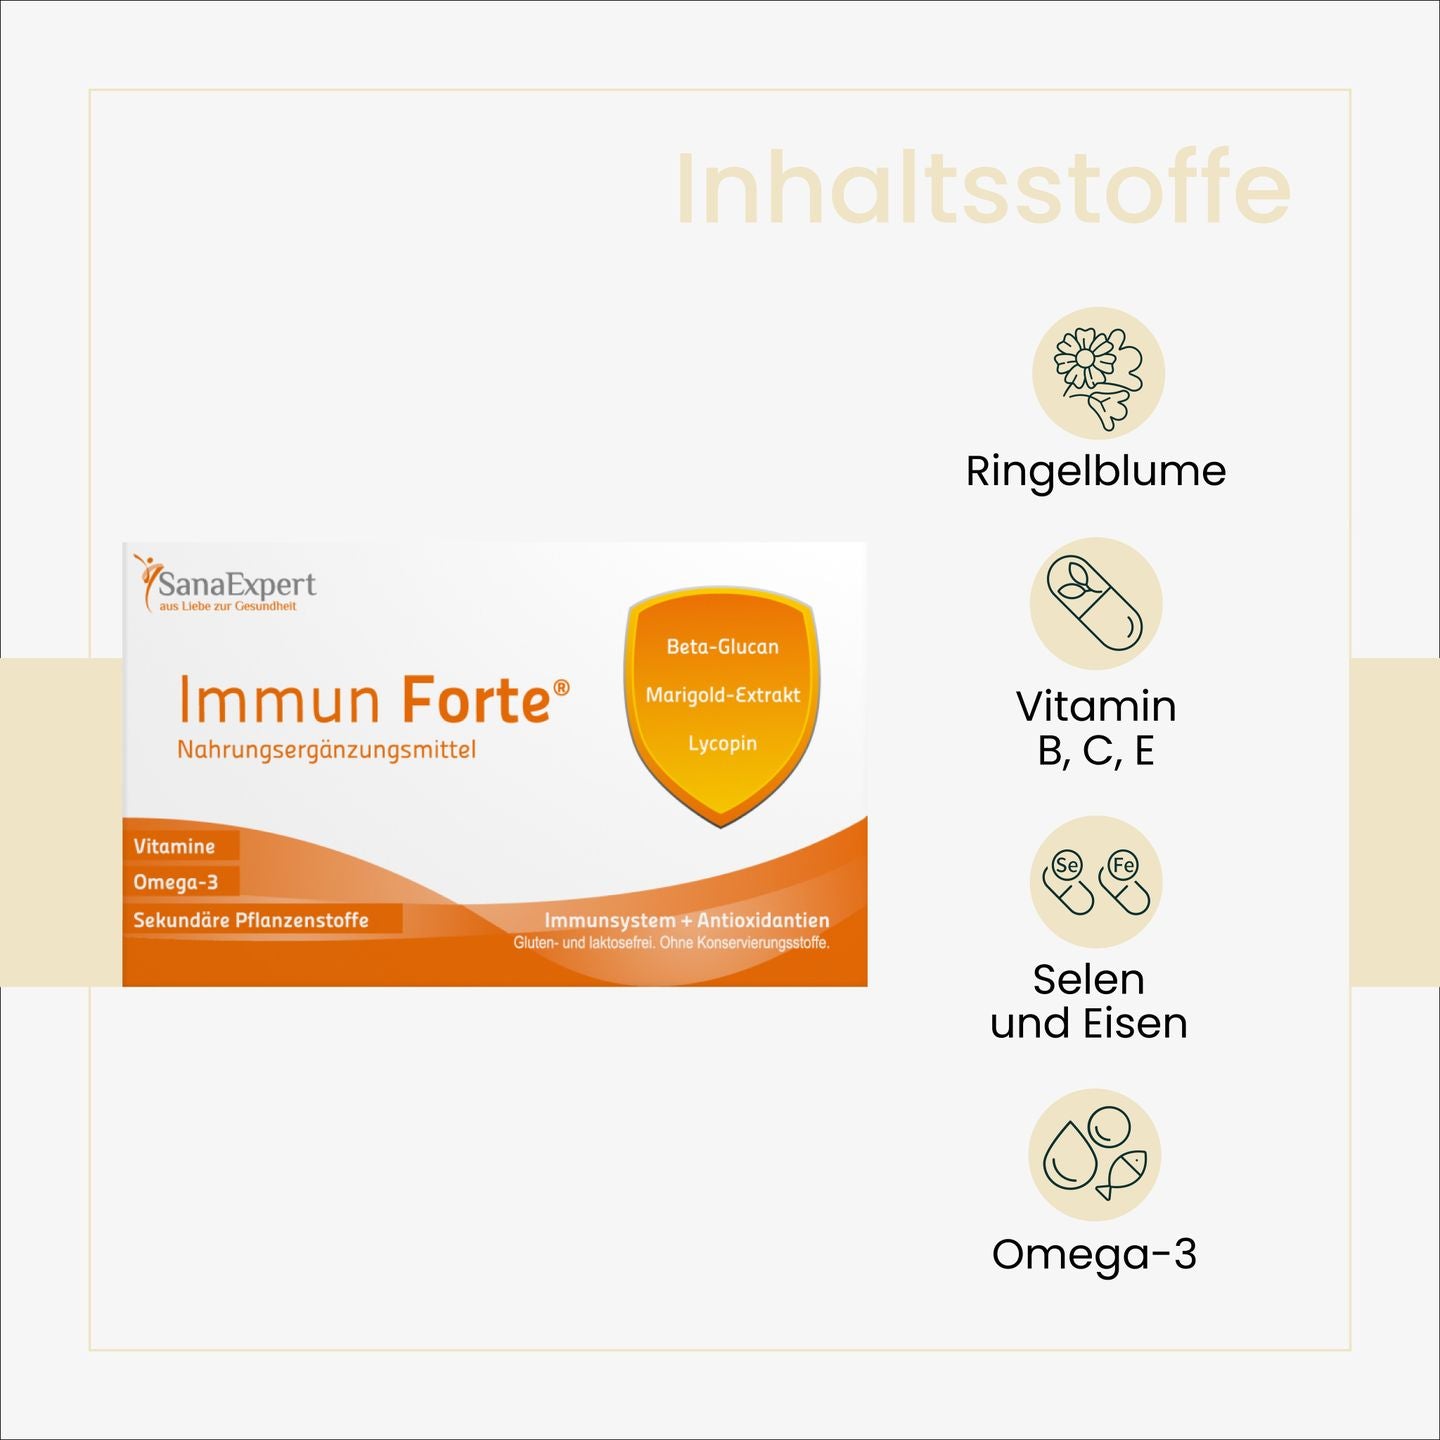 Informationsgrafik über die Inhaltsstoffe von SanaExpert Immun Forte, darunter Ringelblume und Omega-3, betont die natürlichen Komponenten des Nahrungsergänzungsmittels.